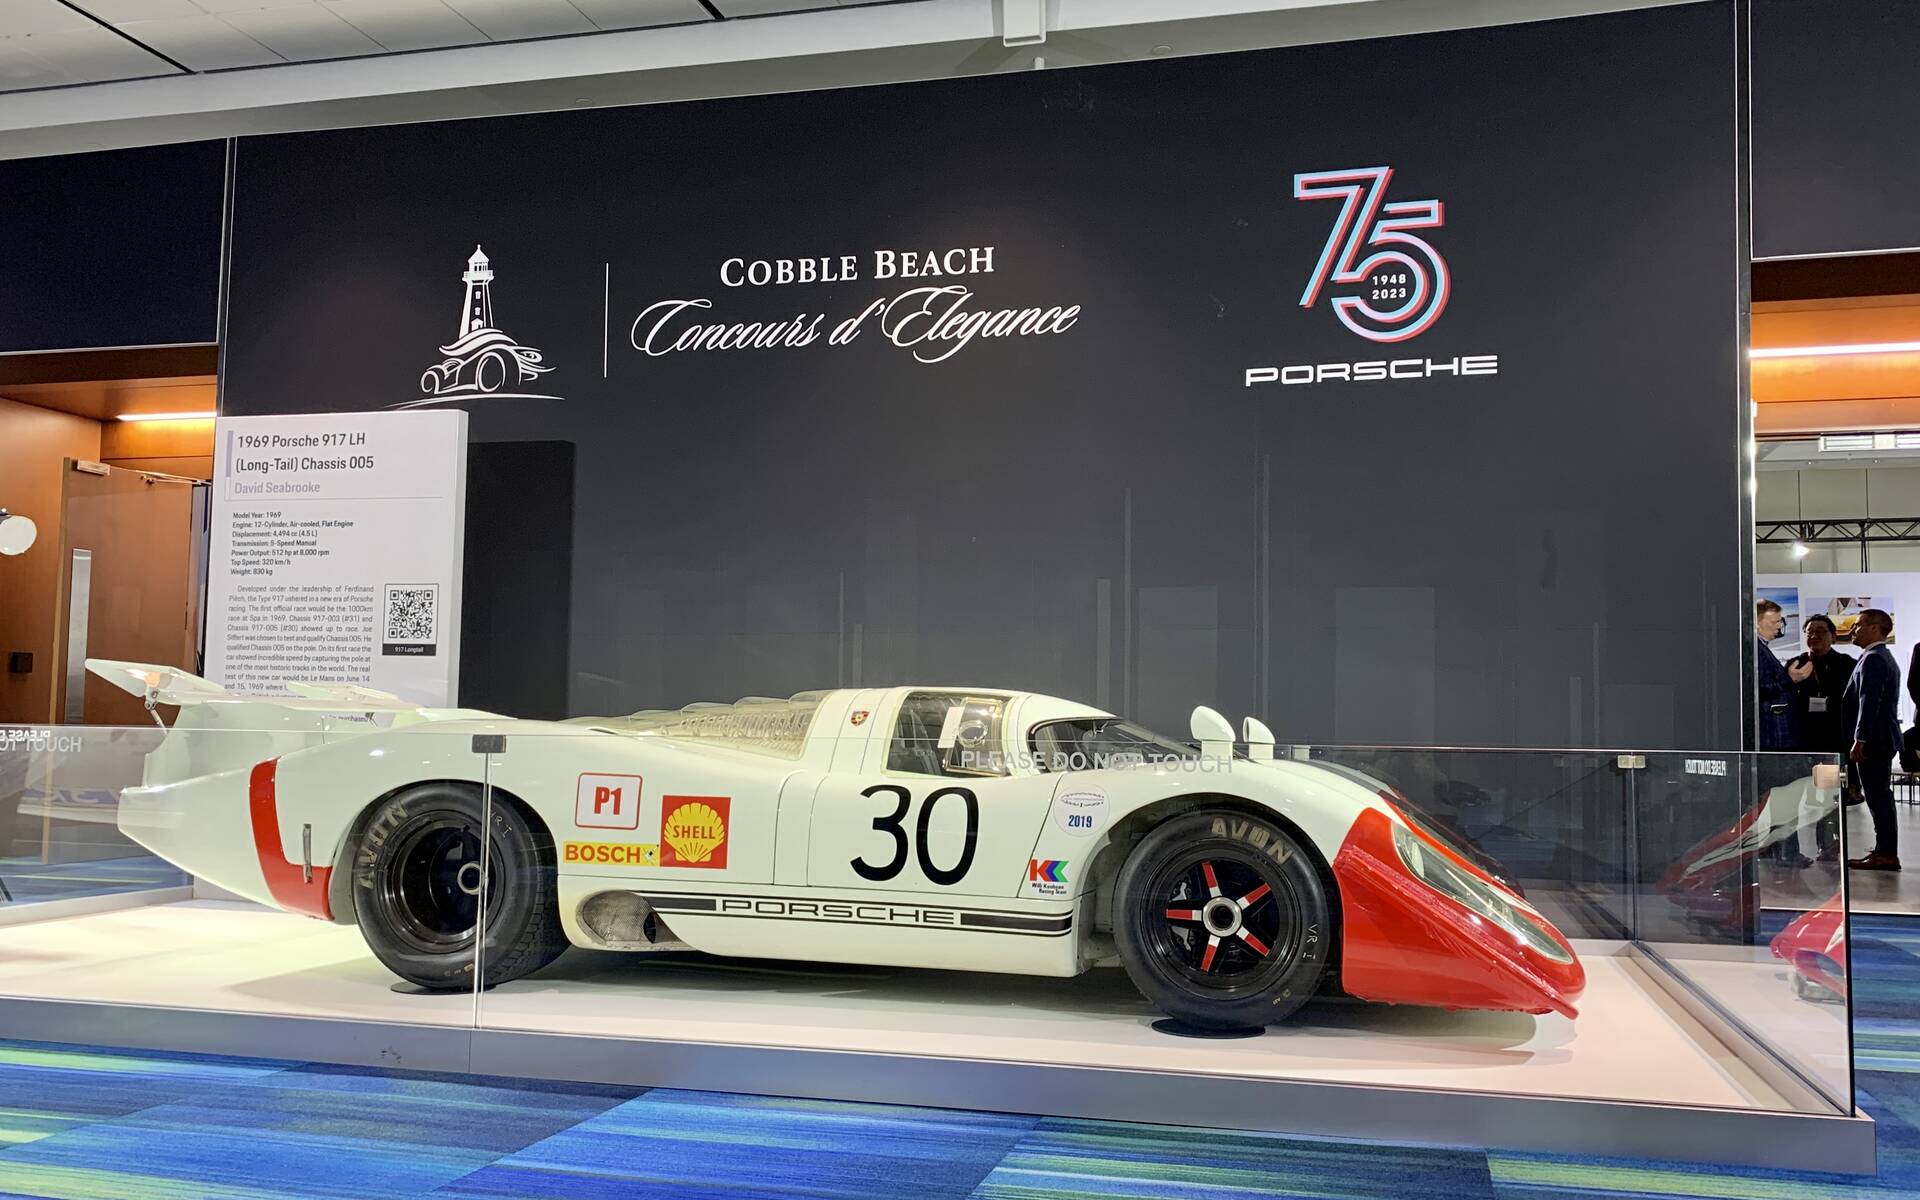 Salon de l’auto de Toronto : soulignons le 75e anniversaire de Porsche 562526-salon-de-l-auto-de-toronto-hommage-au-75e-anniversaire-de-porsche